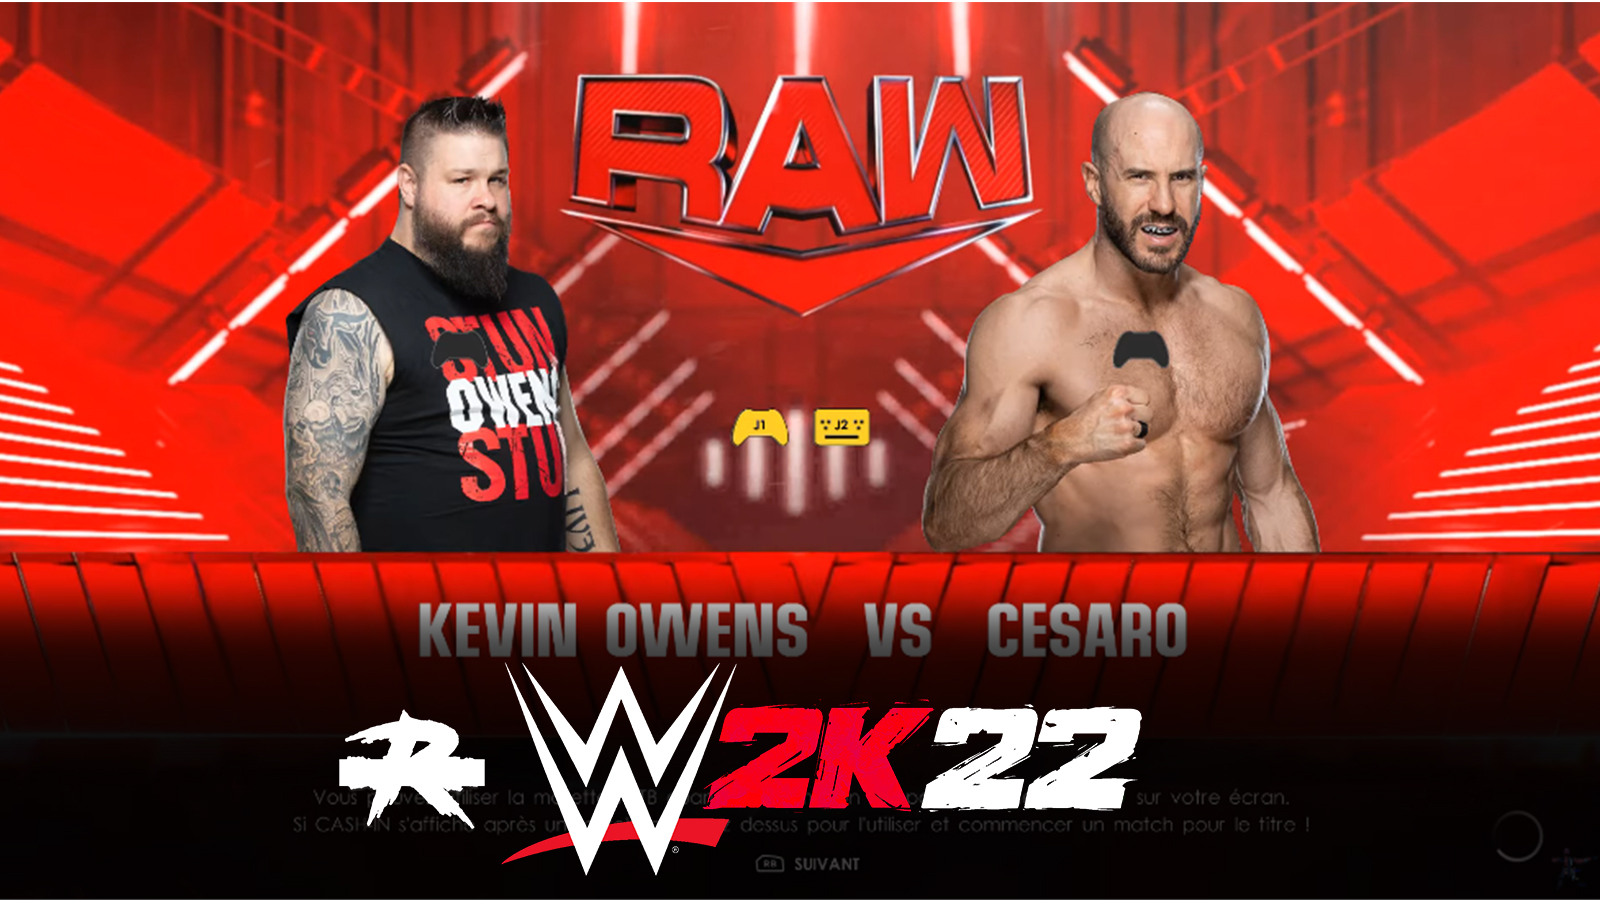 WWE 2K22 - Edge22 Gameplay, New WWE 2K22 Mods 